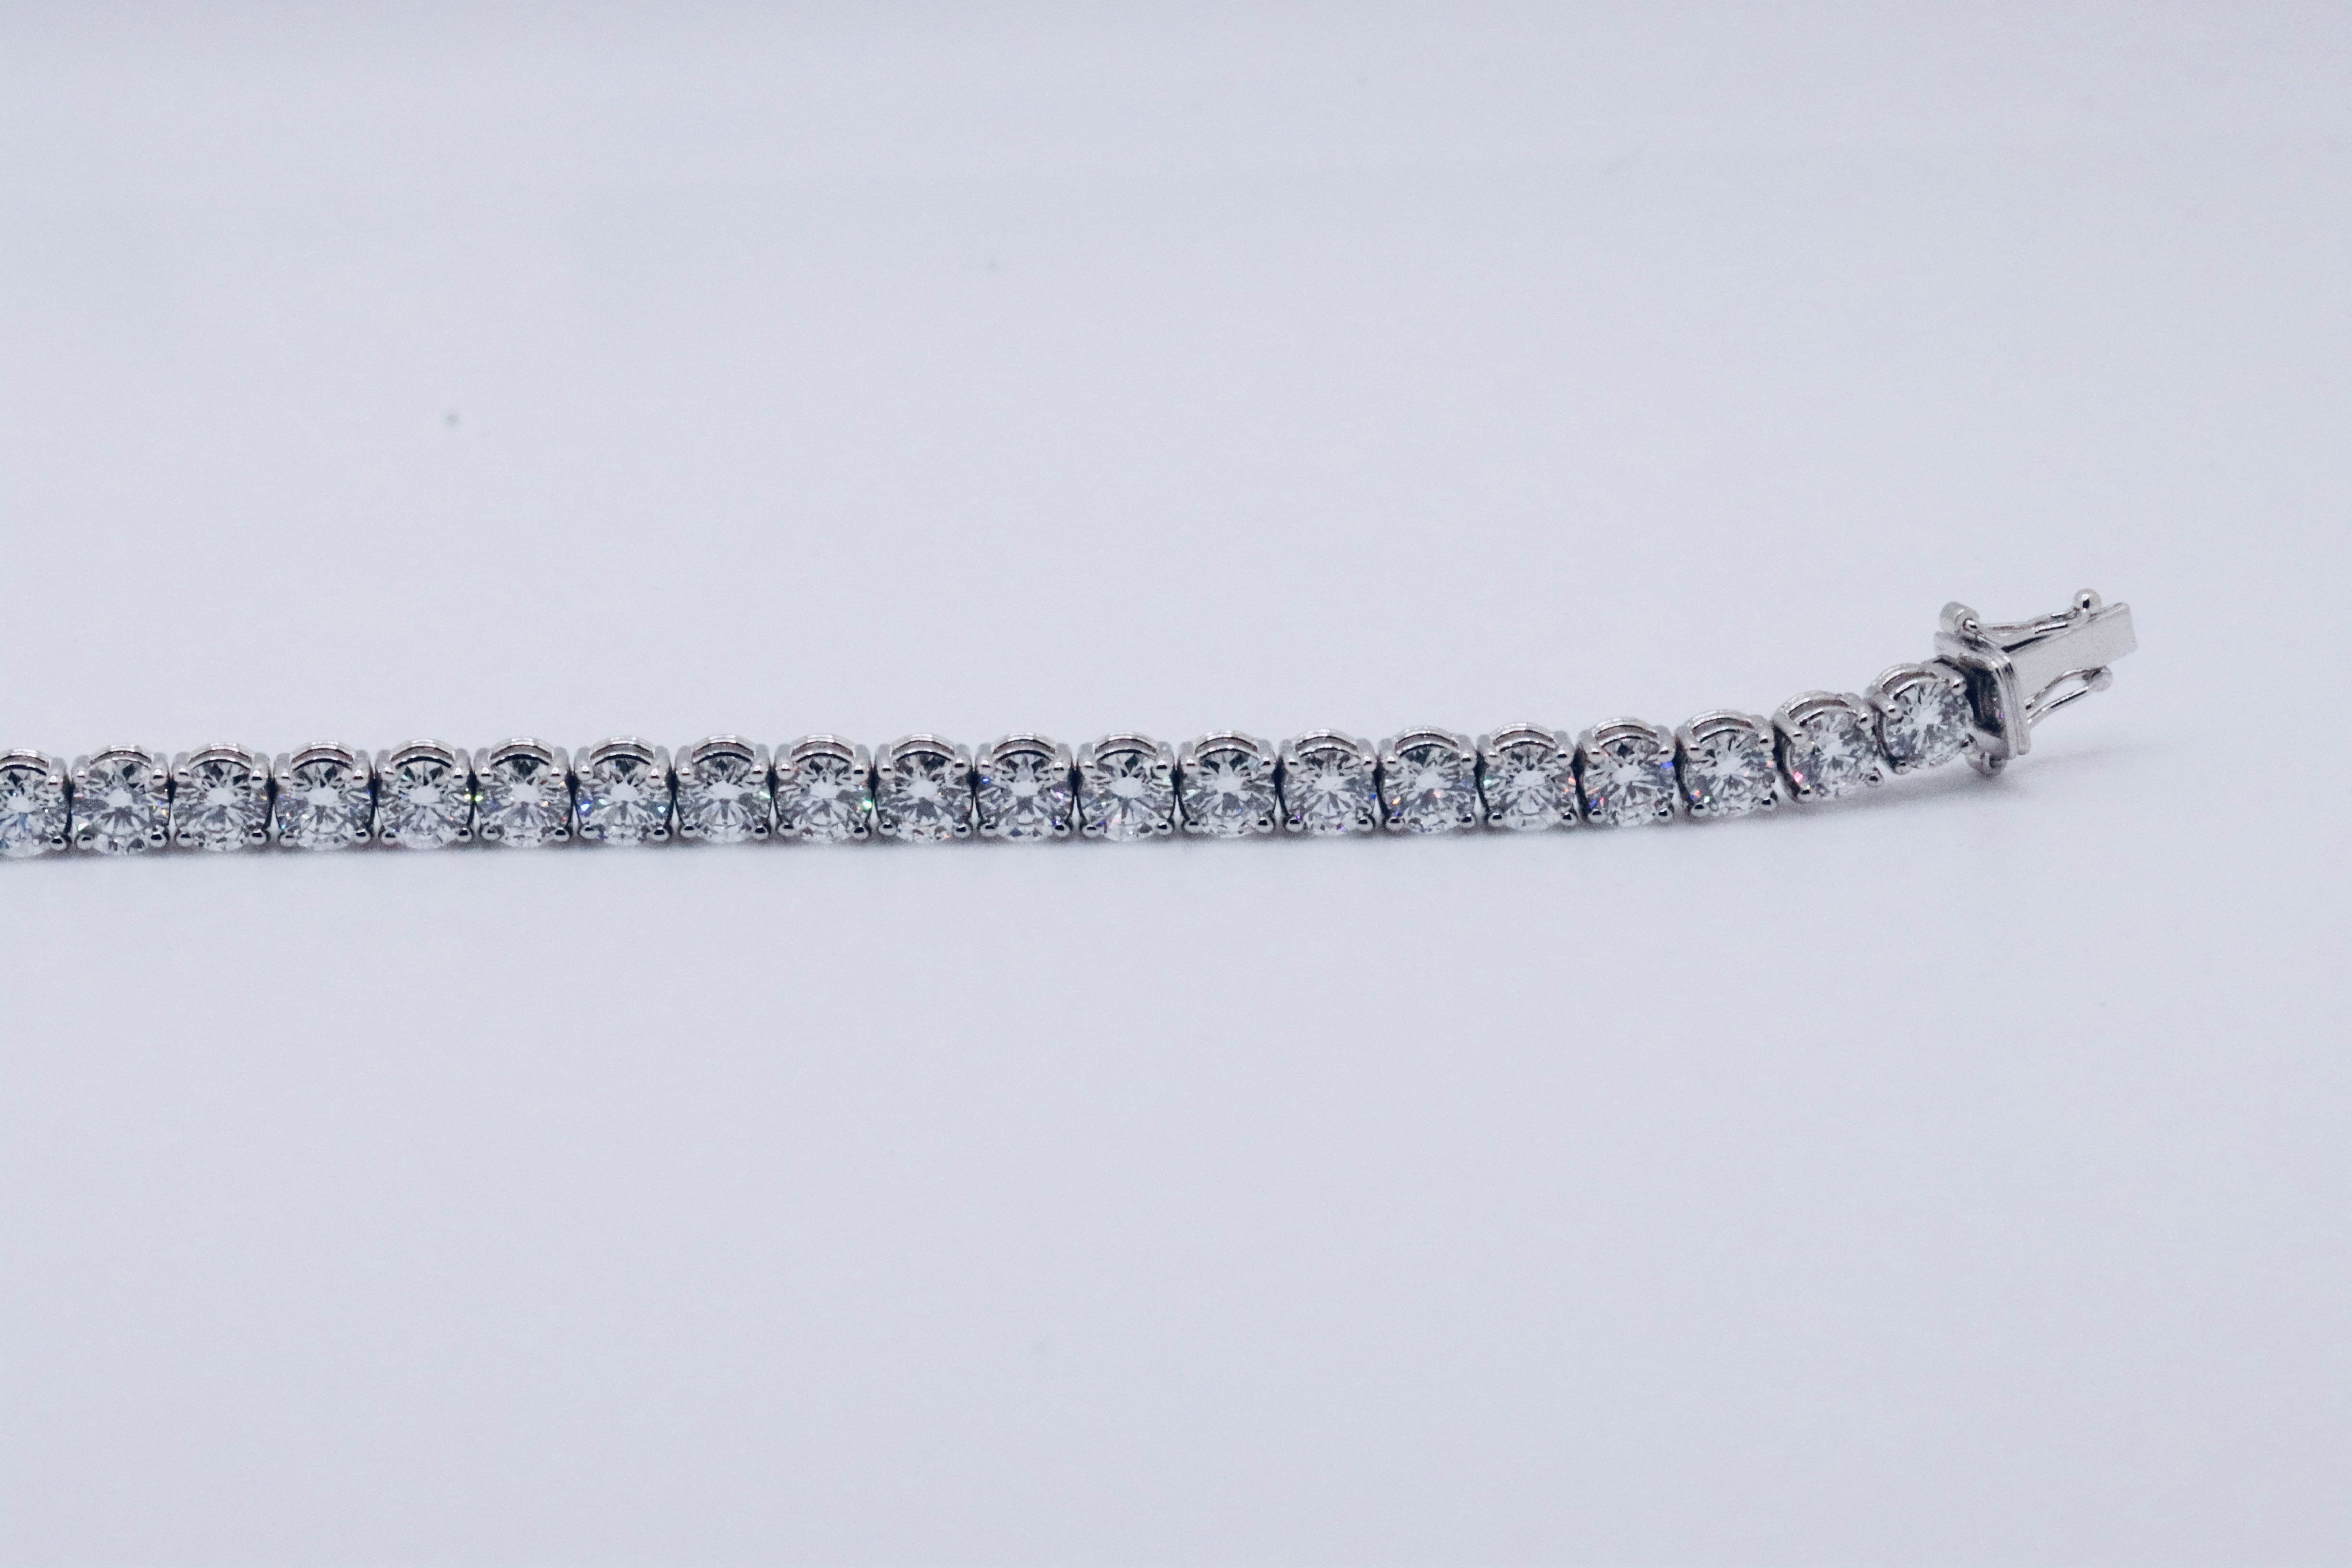 Round Brilliant Cut 14 Carat Diamond Tennis Bracelet D Colour VVS Clarity - 18Kt White Gold - IGI - Image 17 of 31